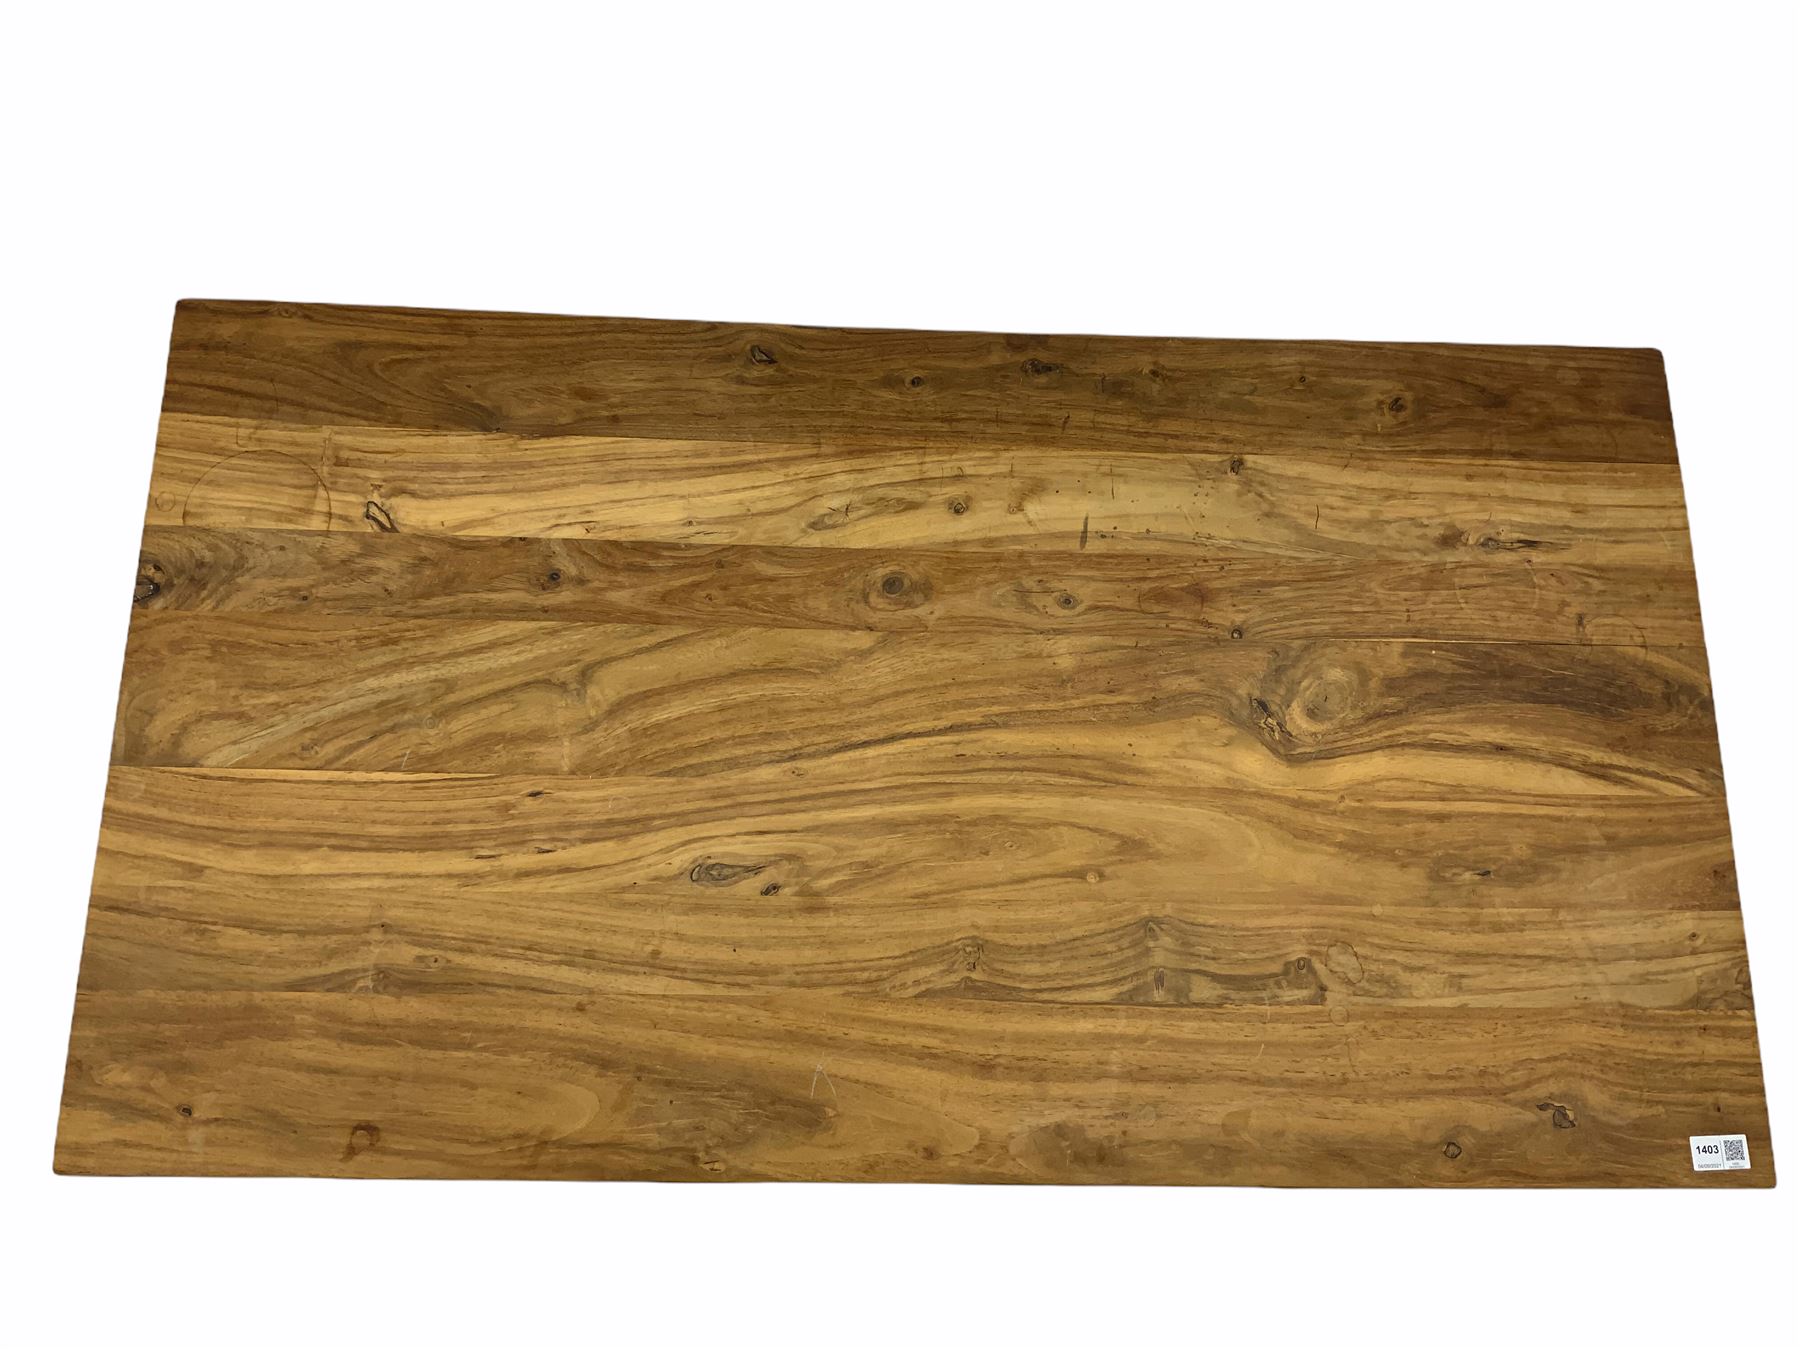 Hardwood rectangular coffee table - Image 3 of 3